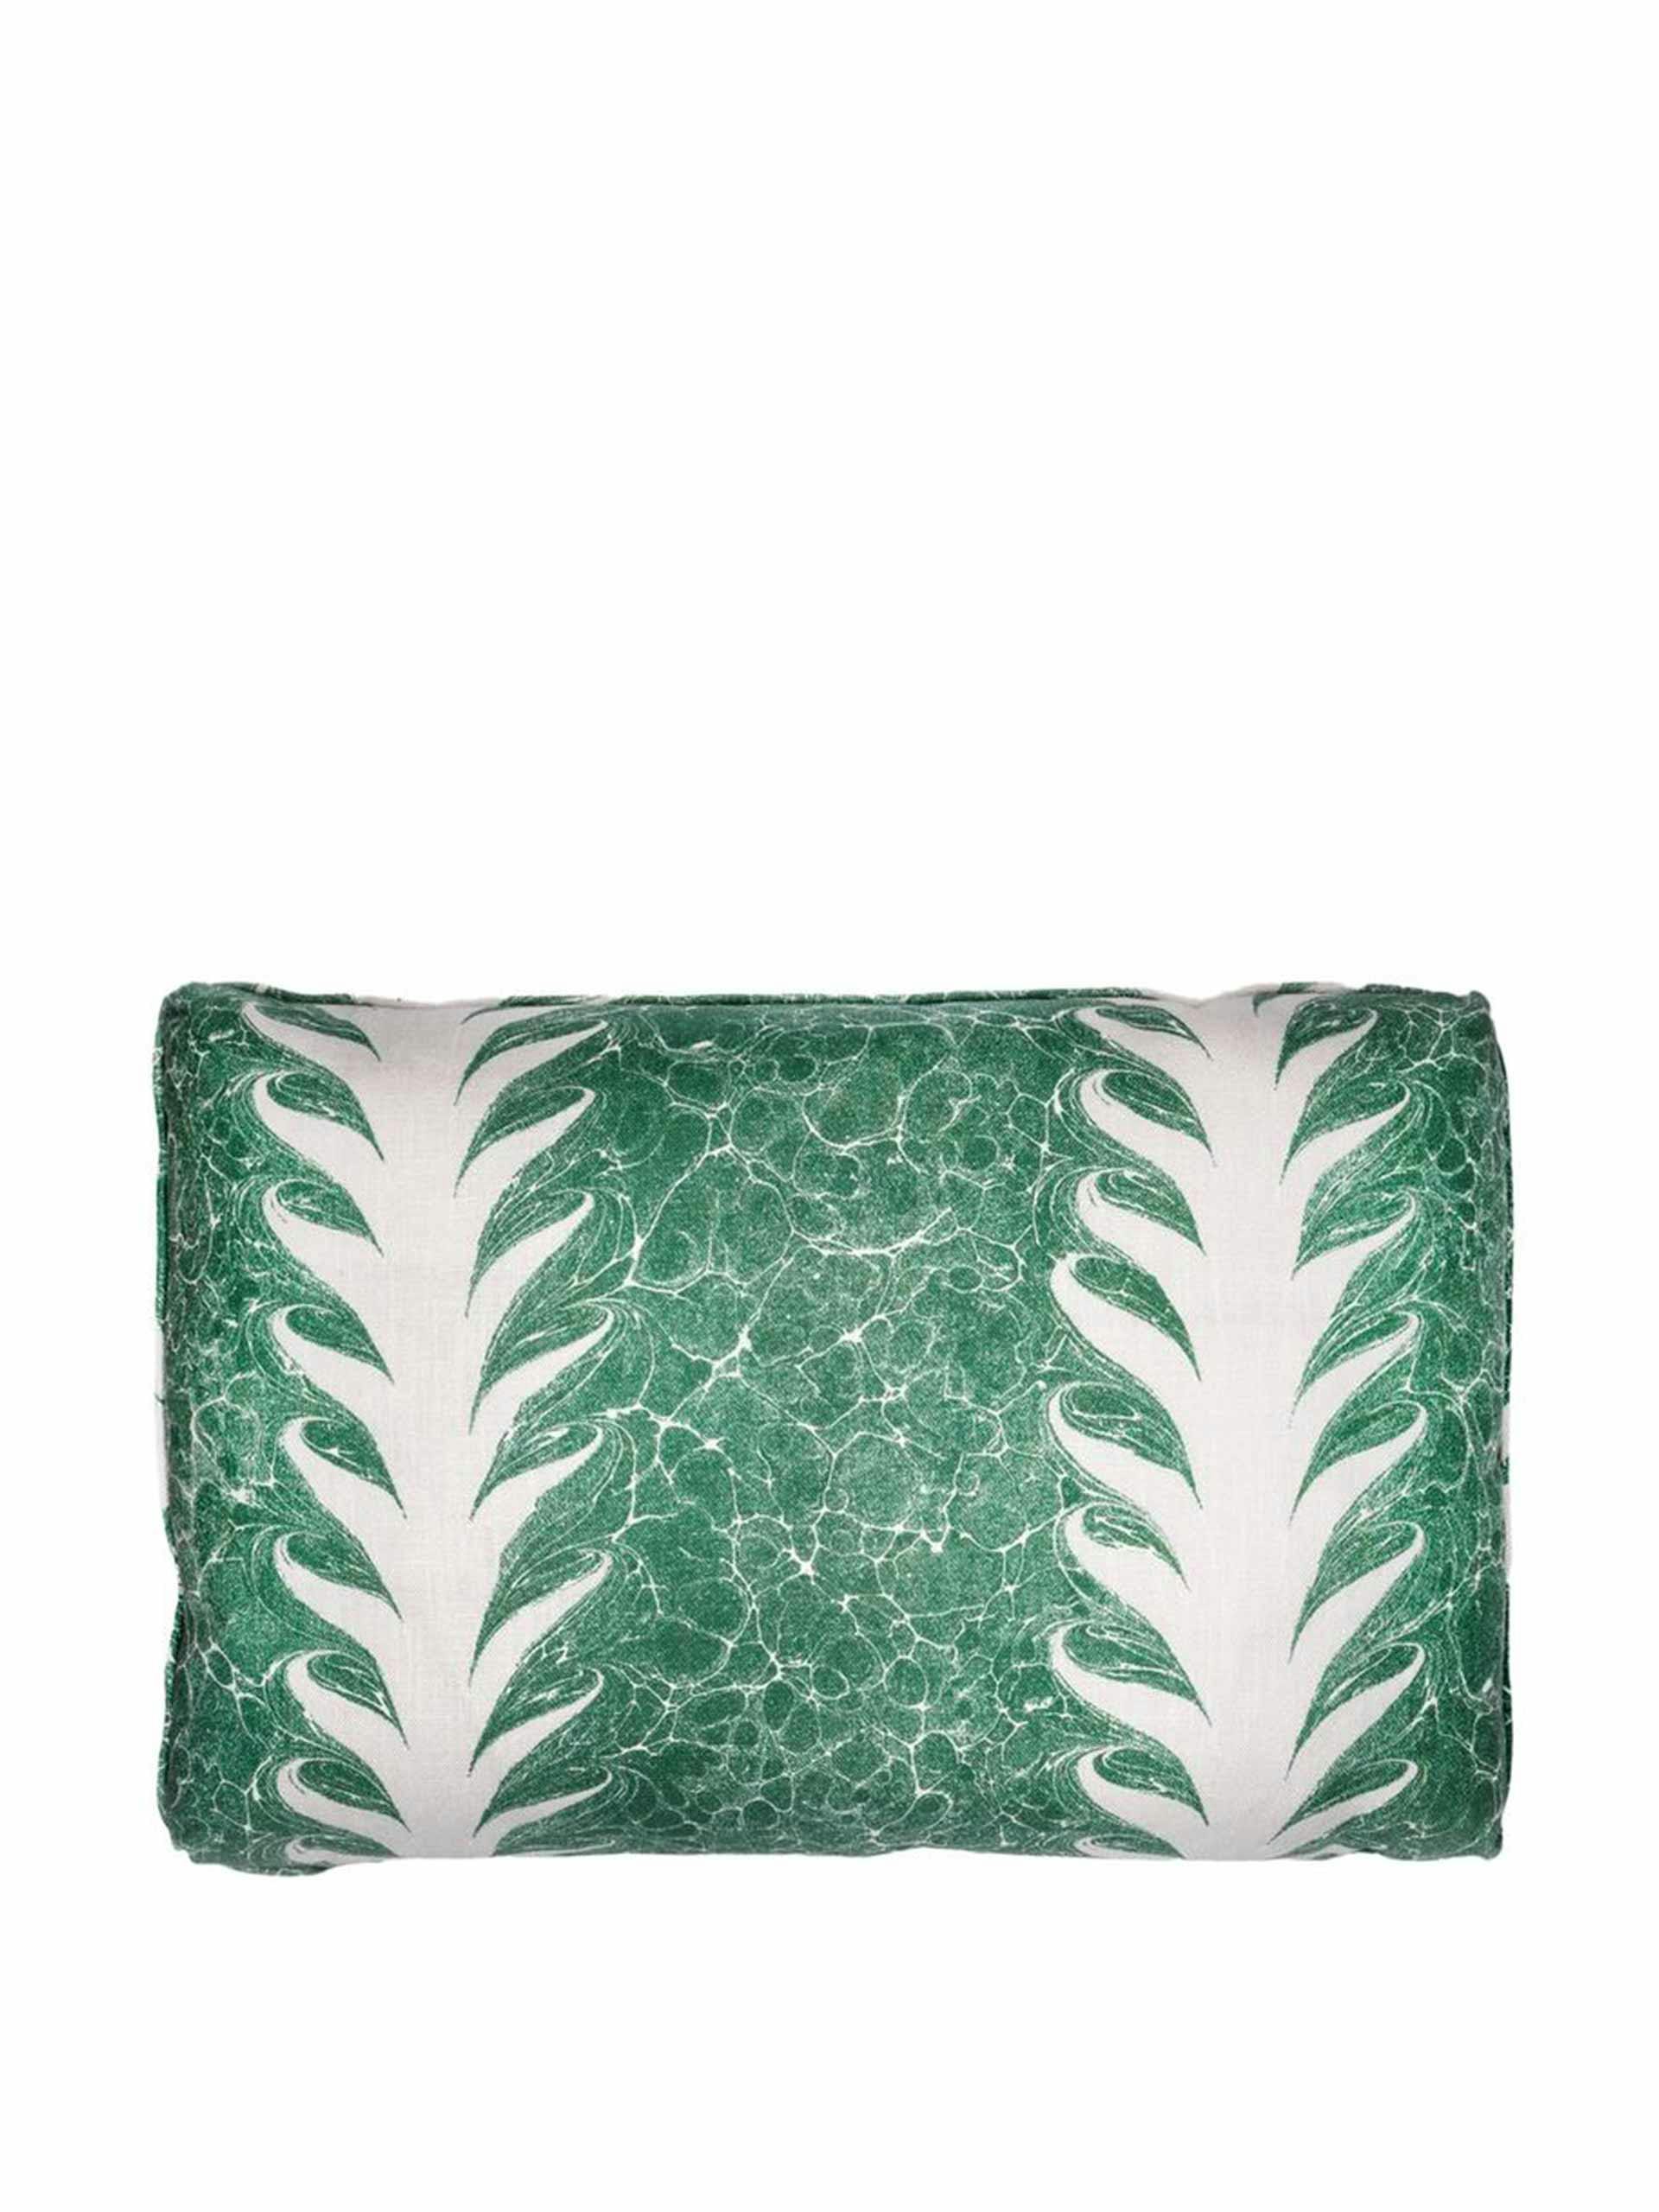 Palm linen cushion